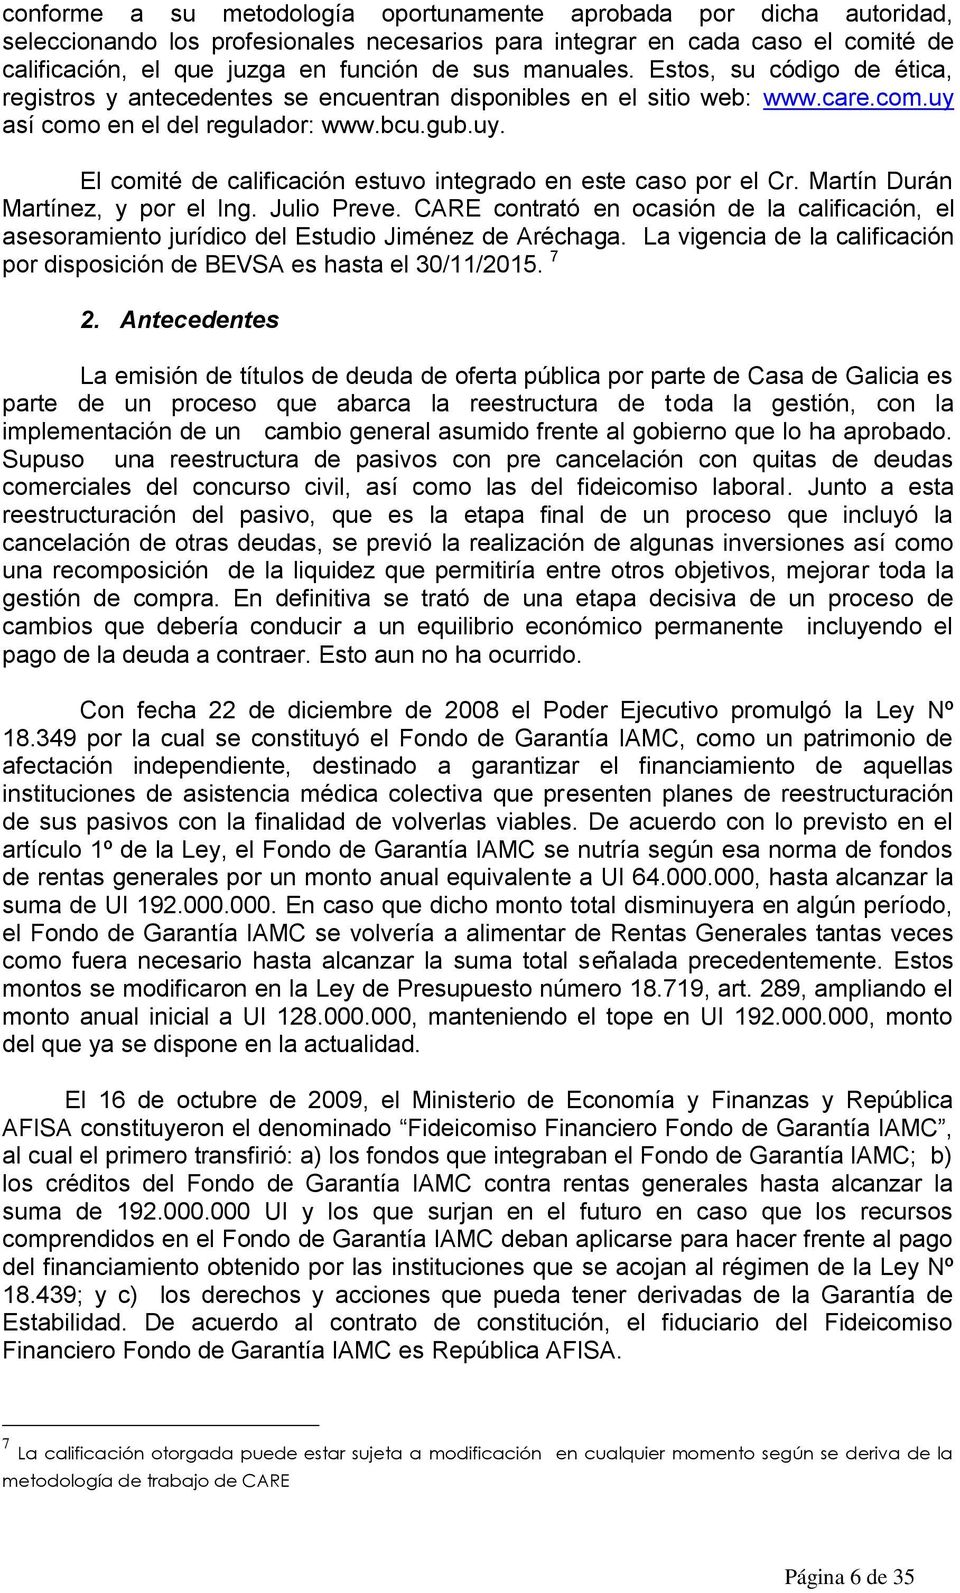 Martín Durán Martínez, y por el Ing. Julio Preve. CARE contrató en ocasión de la calificación, el asesoramiento jurídico del Estudio Jiménez de Aréchaga.